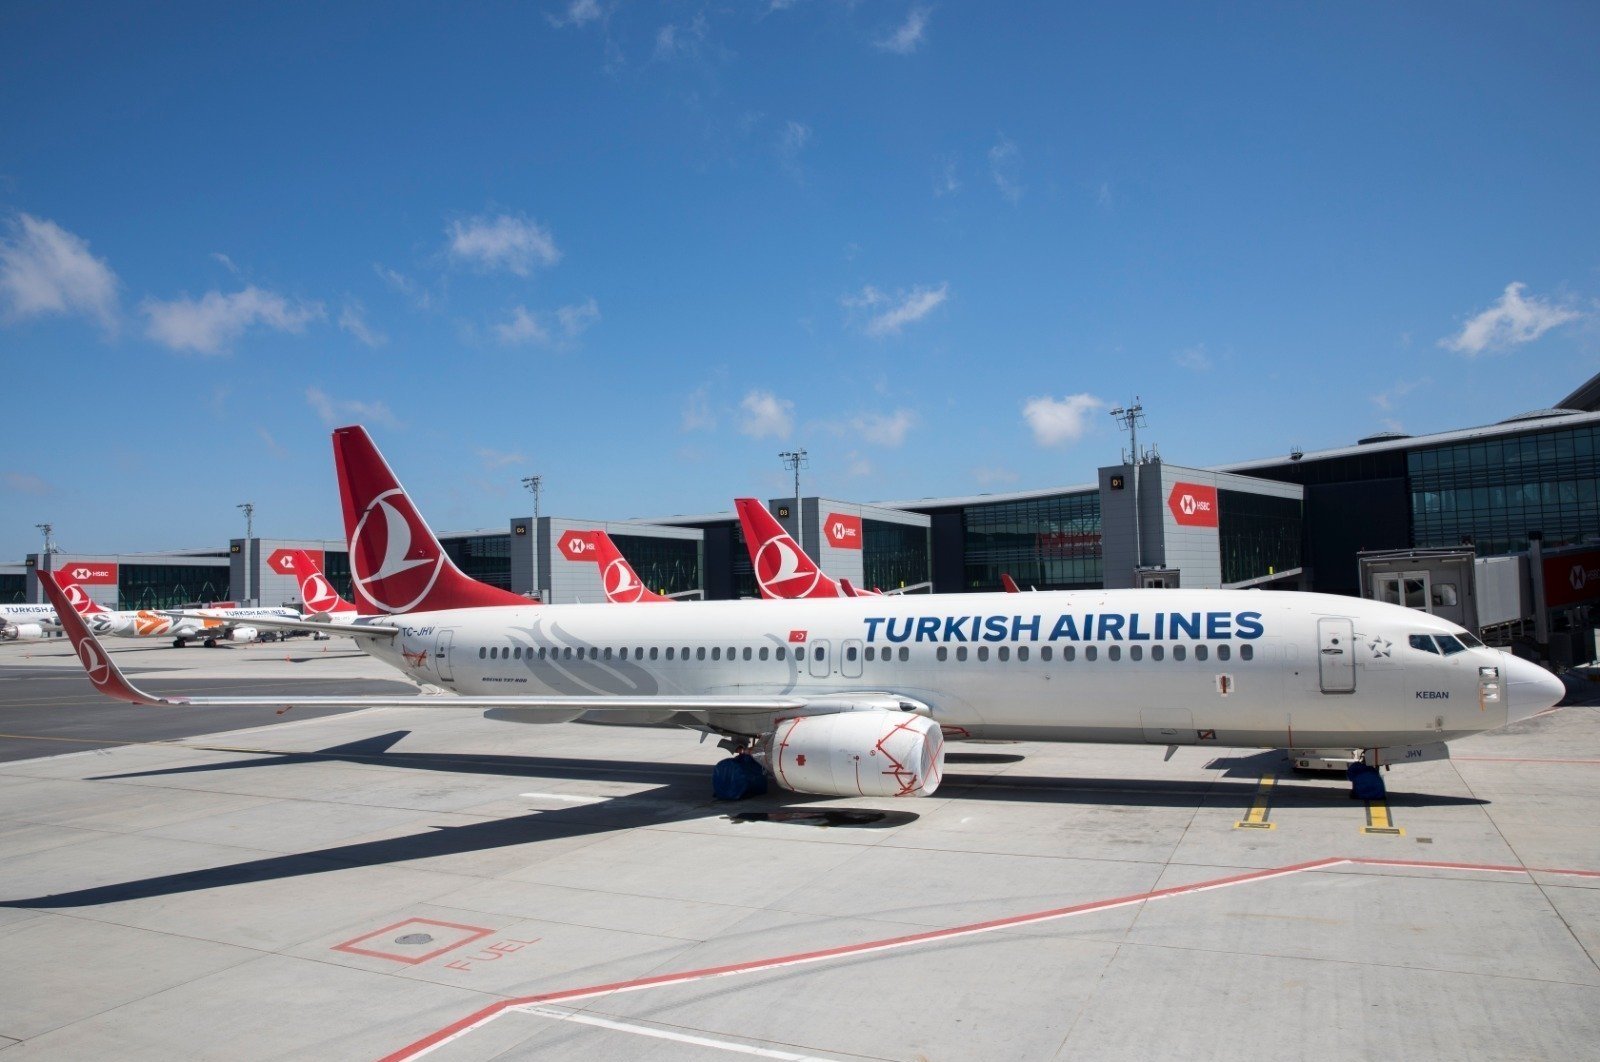 Turkish Airlines dinobatkan sebagai ‘pembawa bendera paling berkelanjutan’ oleh World Finance